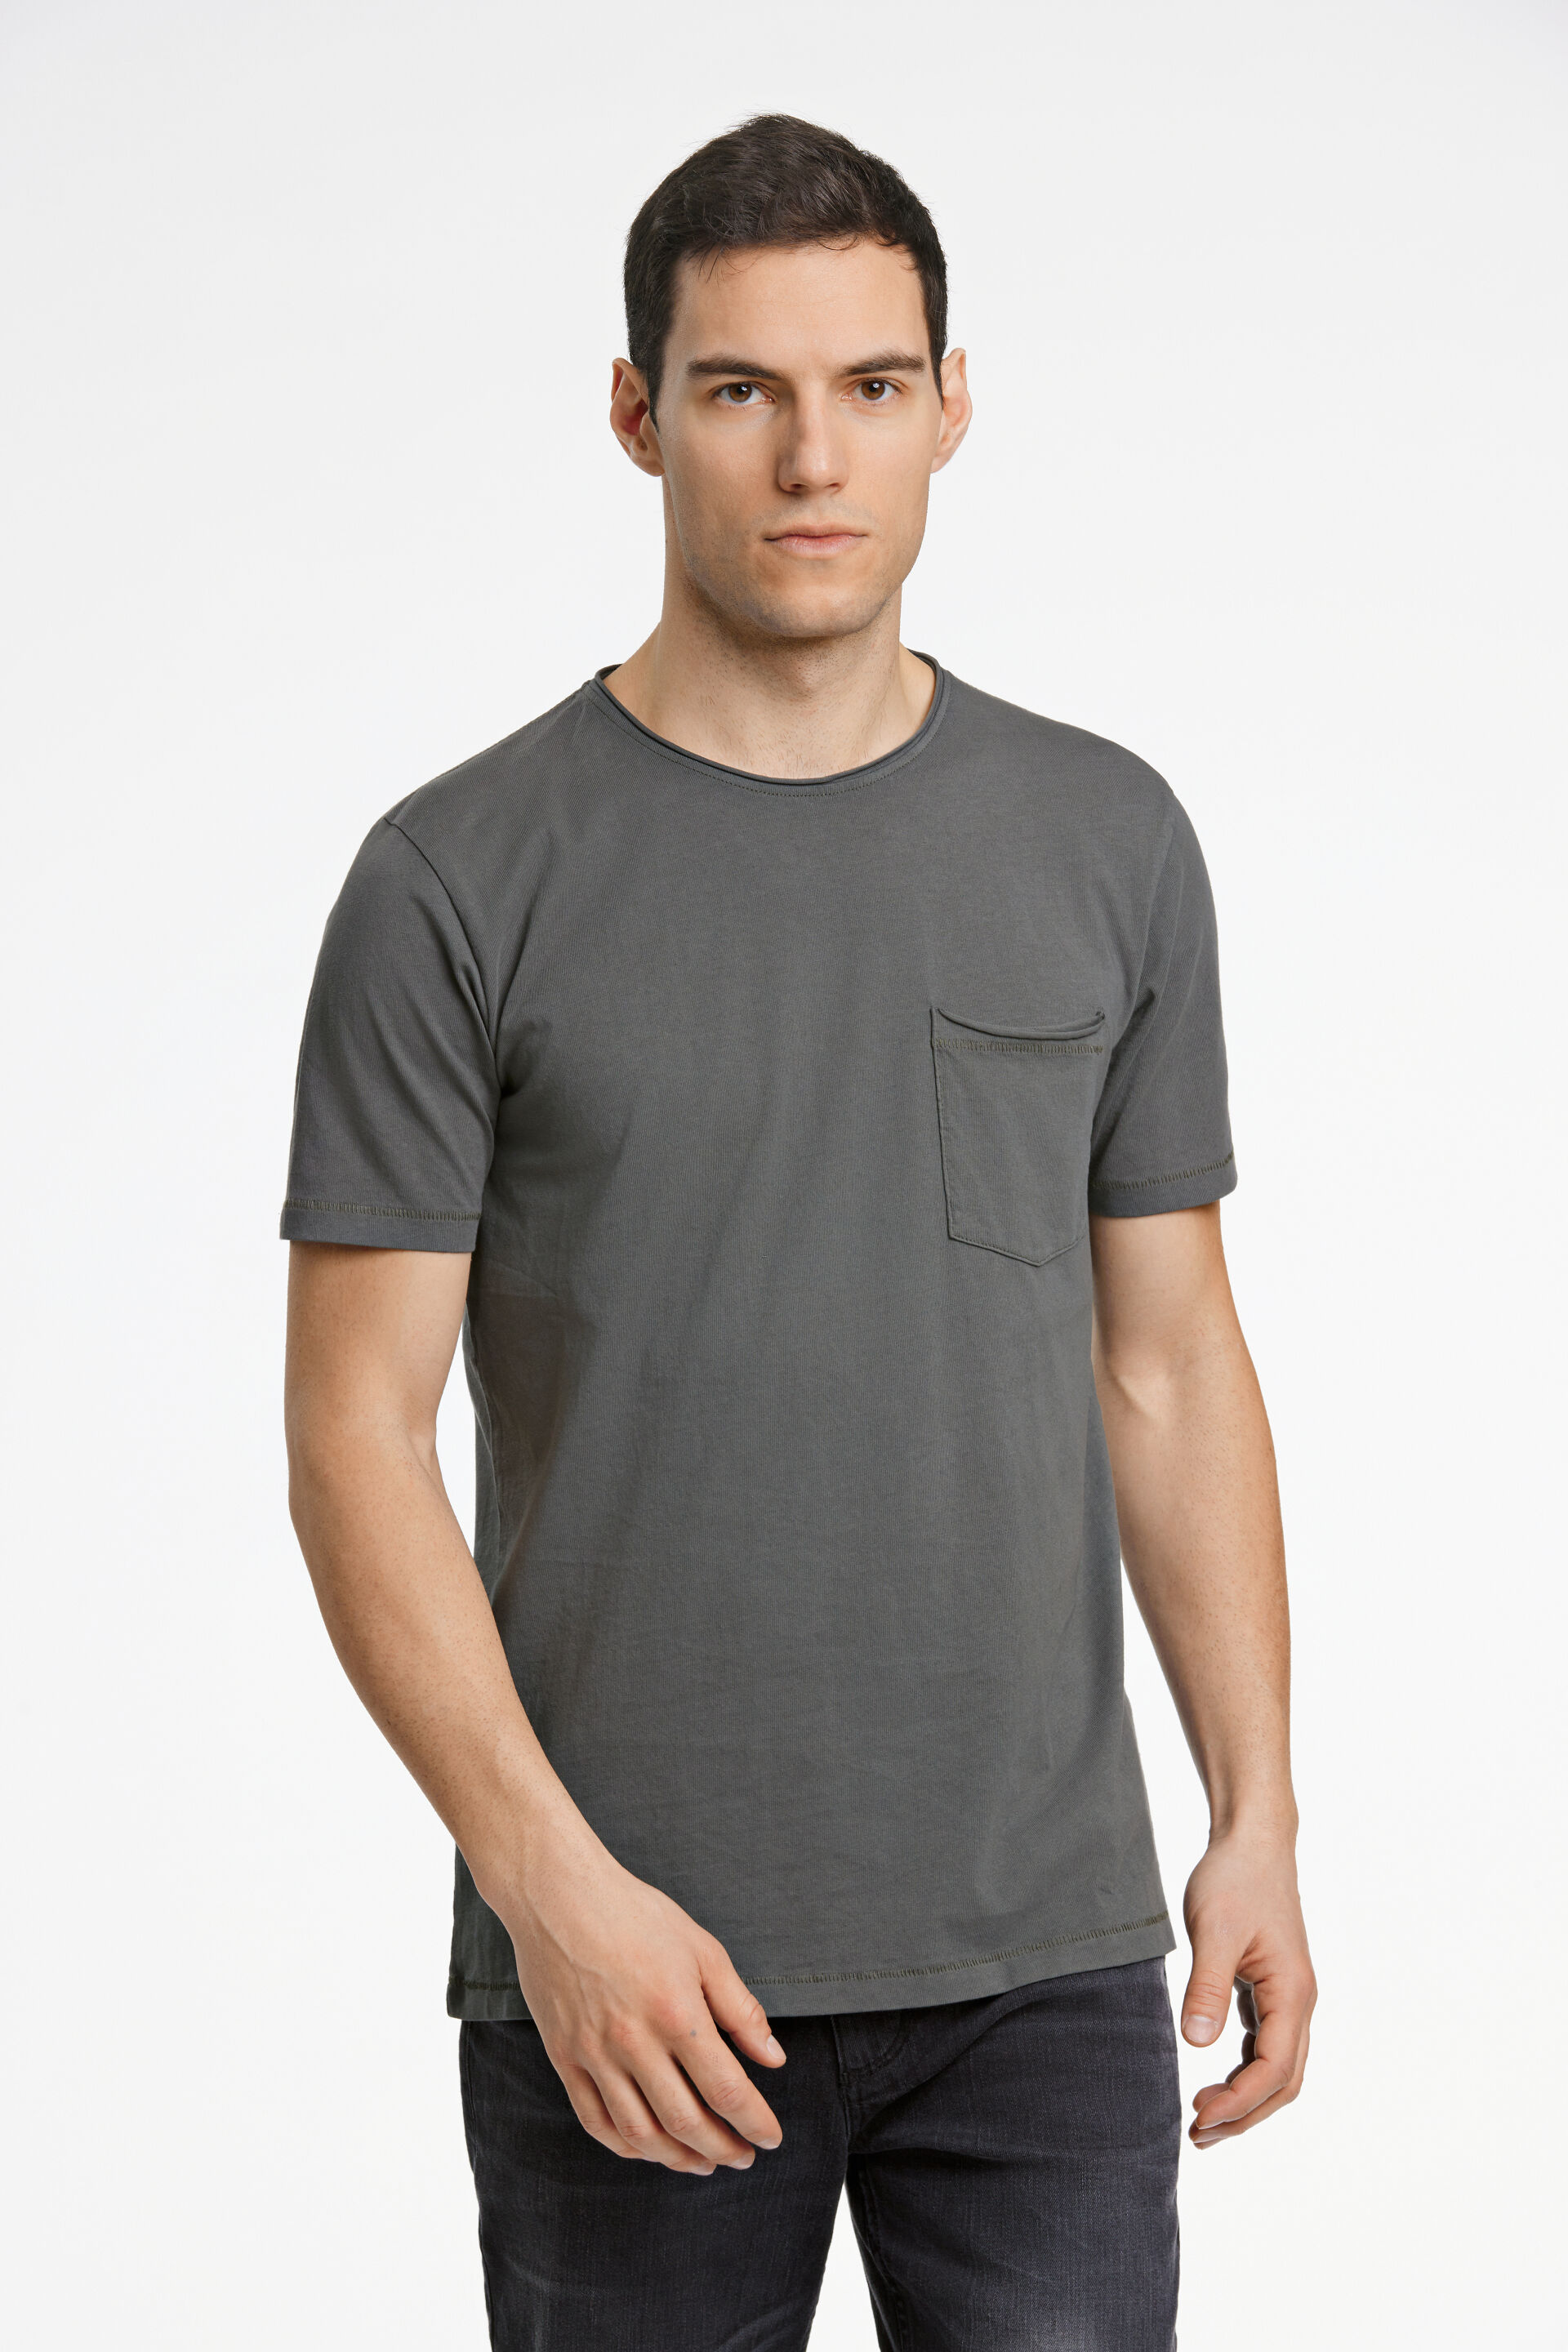 T-shirt T-shirt Grün 30-420154